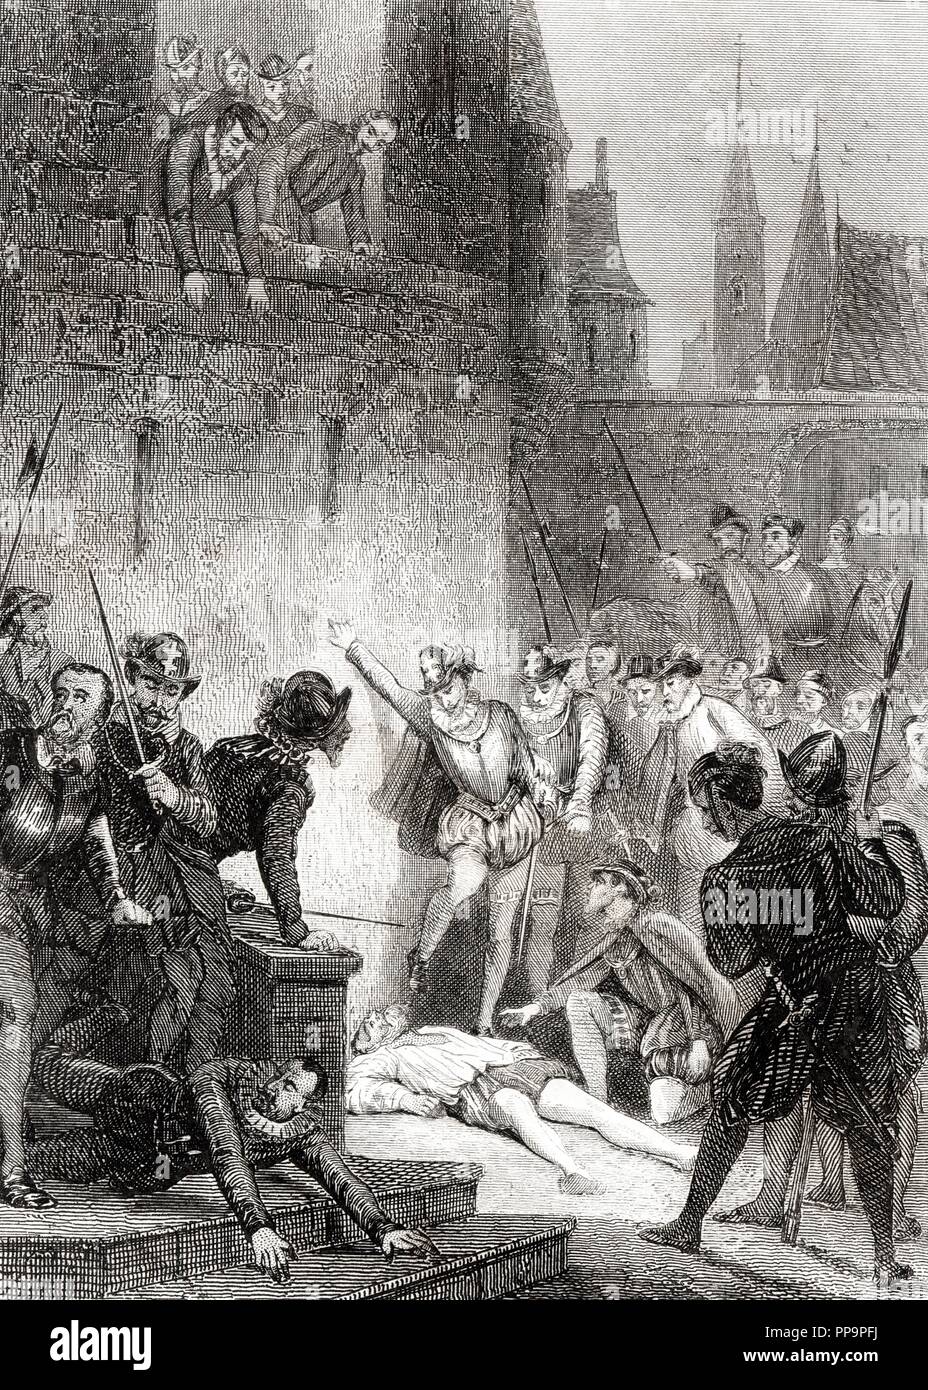 Gaspard II de Coligny (1519-1572), noble político francés líder de los Hugonotes protestantes, asesinado y defenestrado, hecho que desencadenó la masacre de hugonotes franceses conocido como la Matanza de San Bartolomé en agosto de 1572. Grabado de 1864. Stock Photo